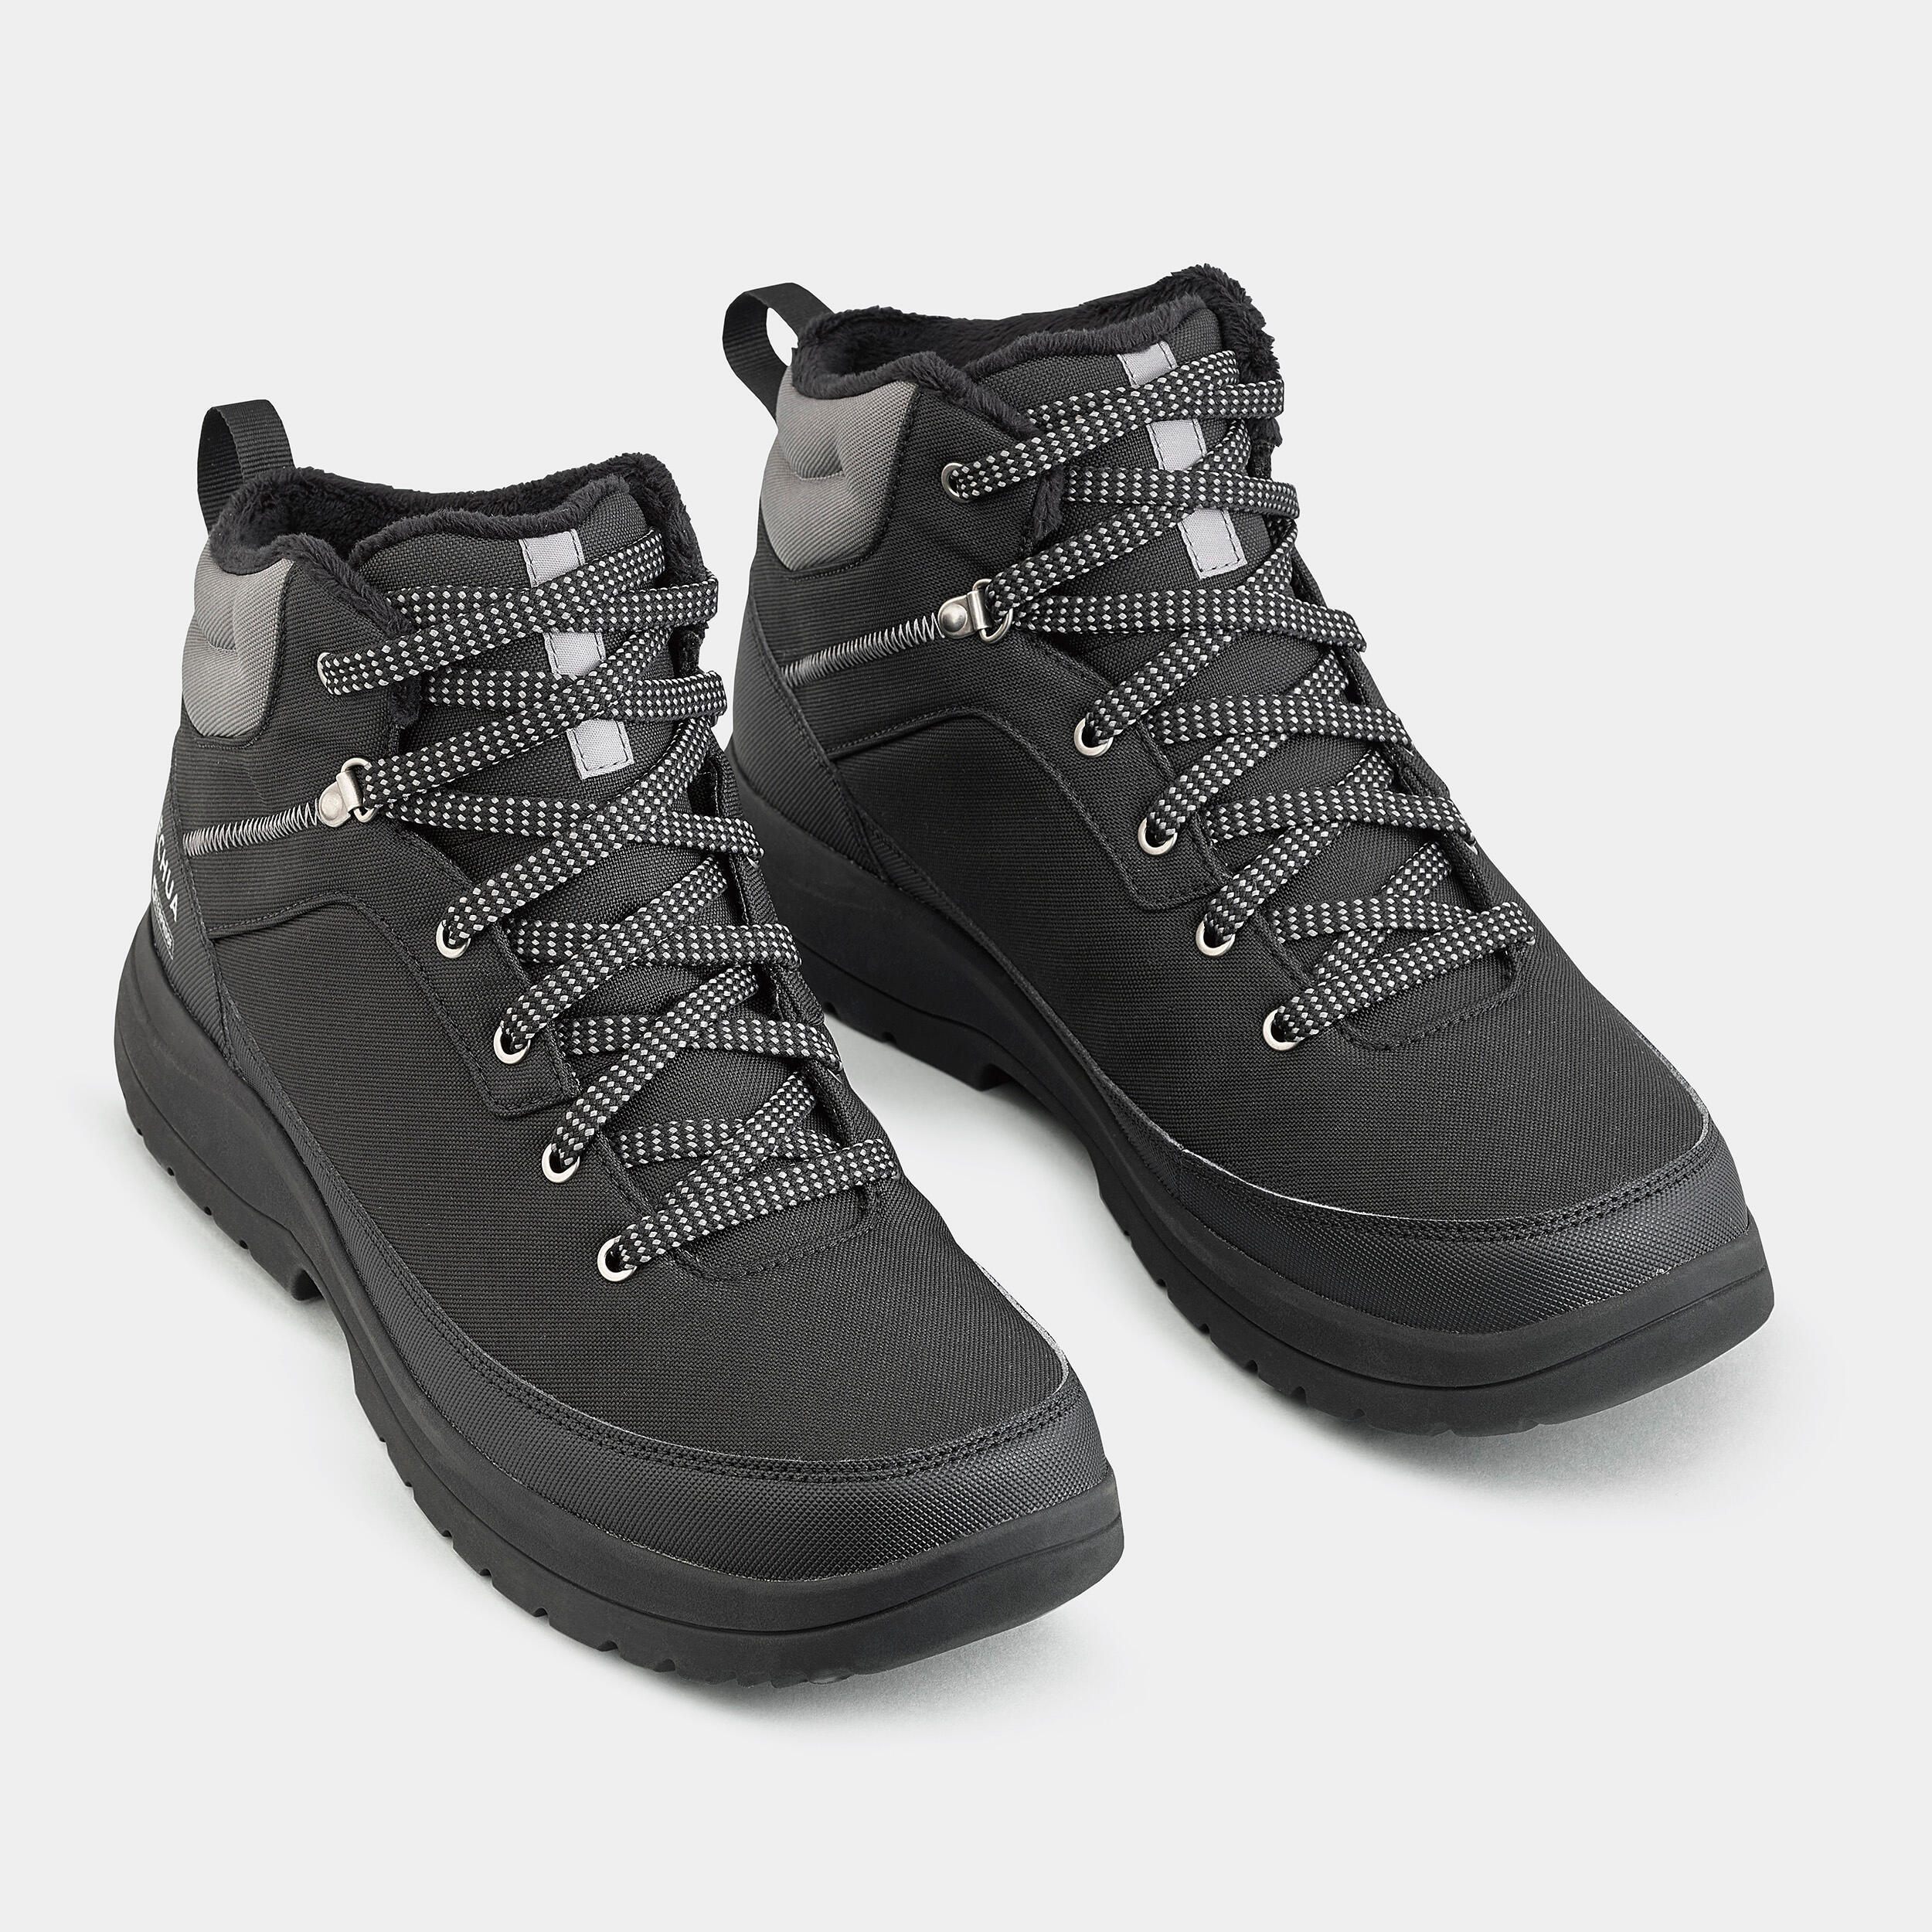 Мужские непромокаемые ботинки средней высоты для зимних походов QuechuaSH100, черный/темно-серый – заказать с доставкой из-за рубежа черезонлайн-сервис «CDEK.Shopping»